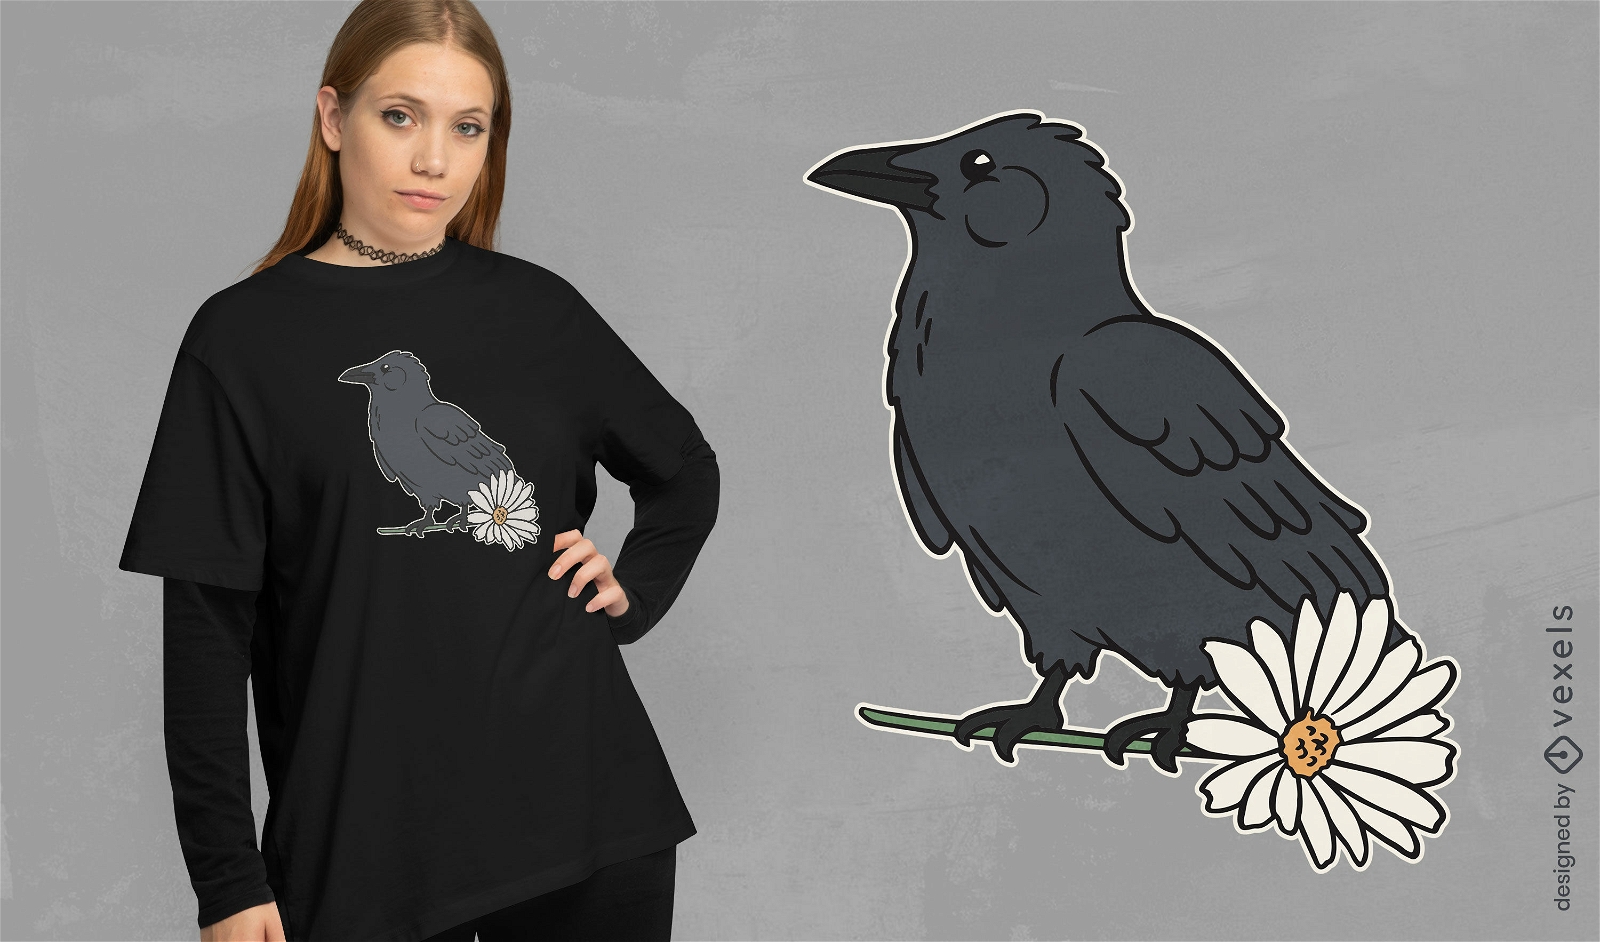 Crow bird and daisy flower t-shirt design